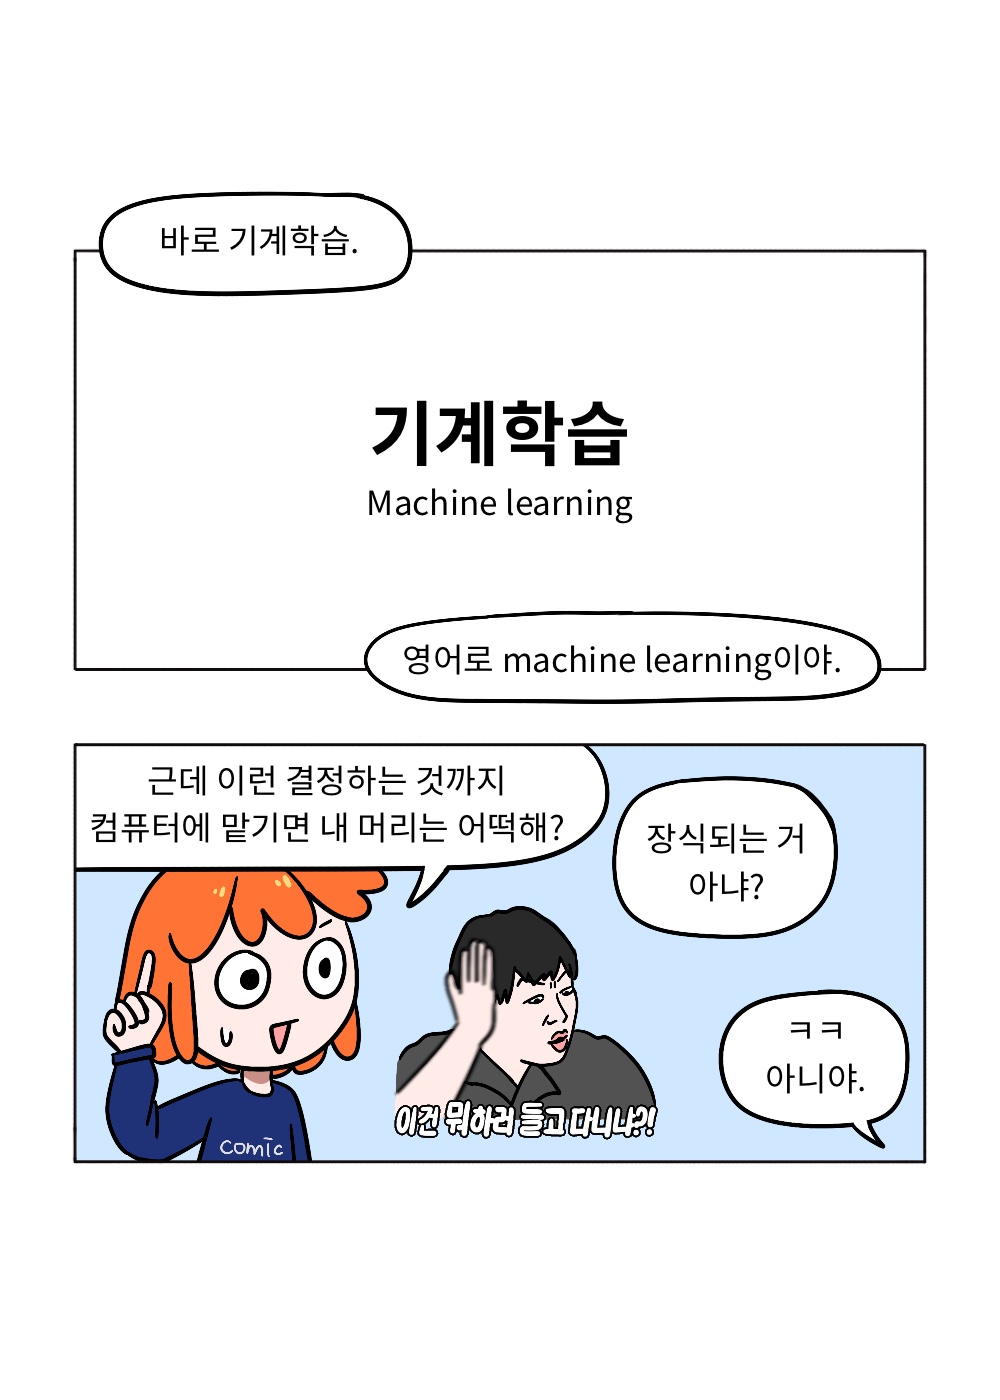 머신러닝(Machine Learning)